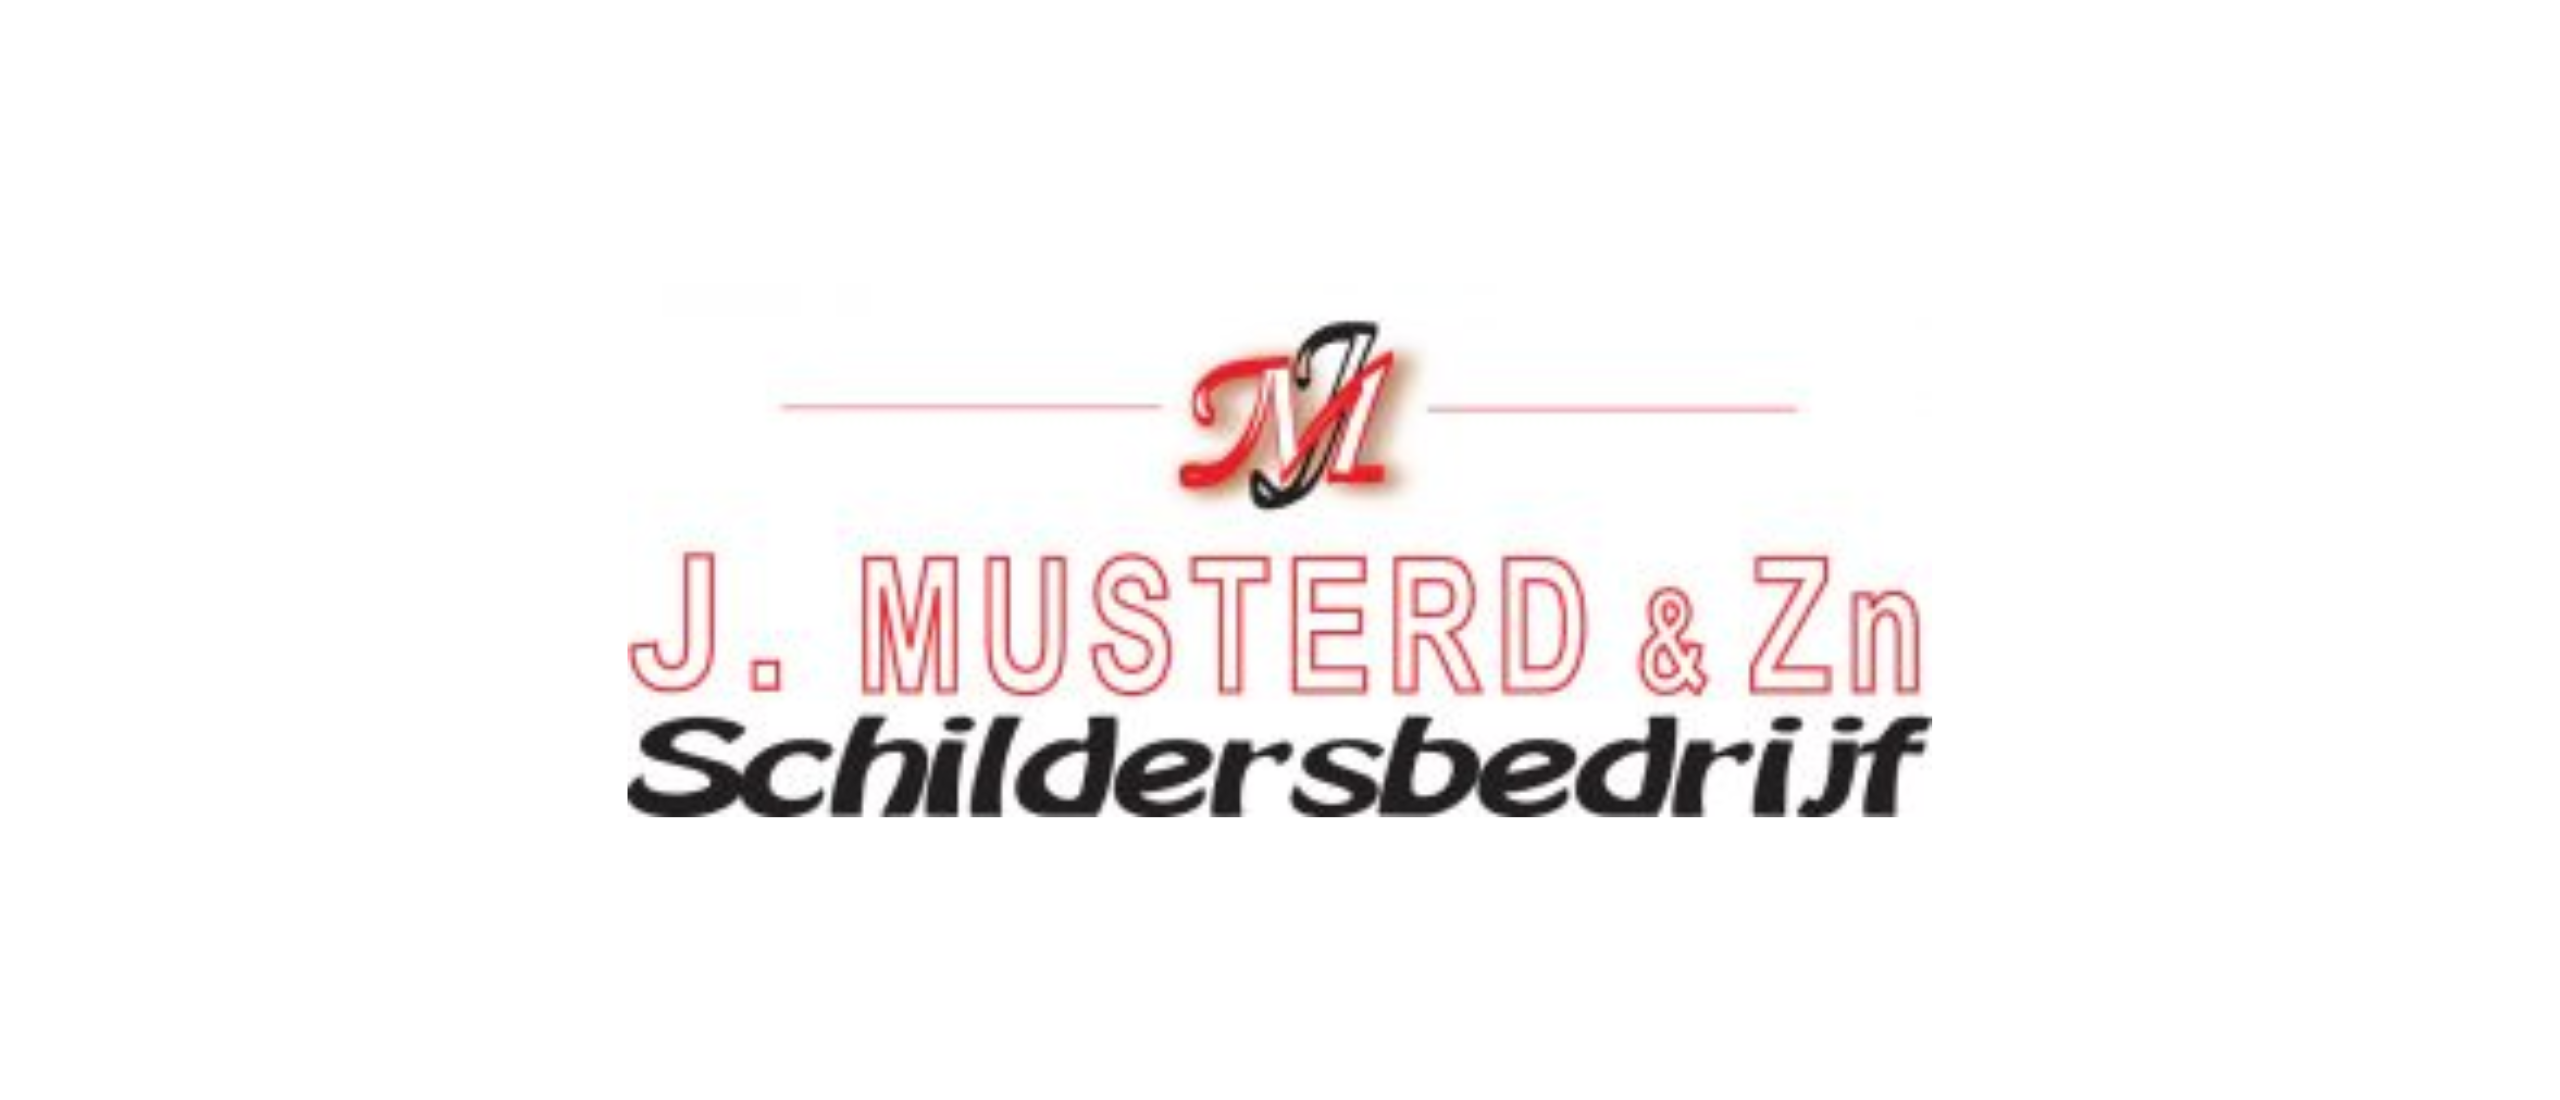 Schildersbedrijf Musterd: een familiebedrijf met hart voor het schildersvak in het hart van Den Haag